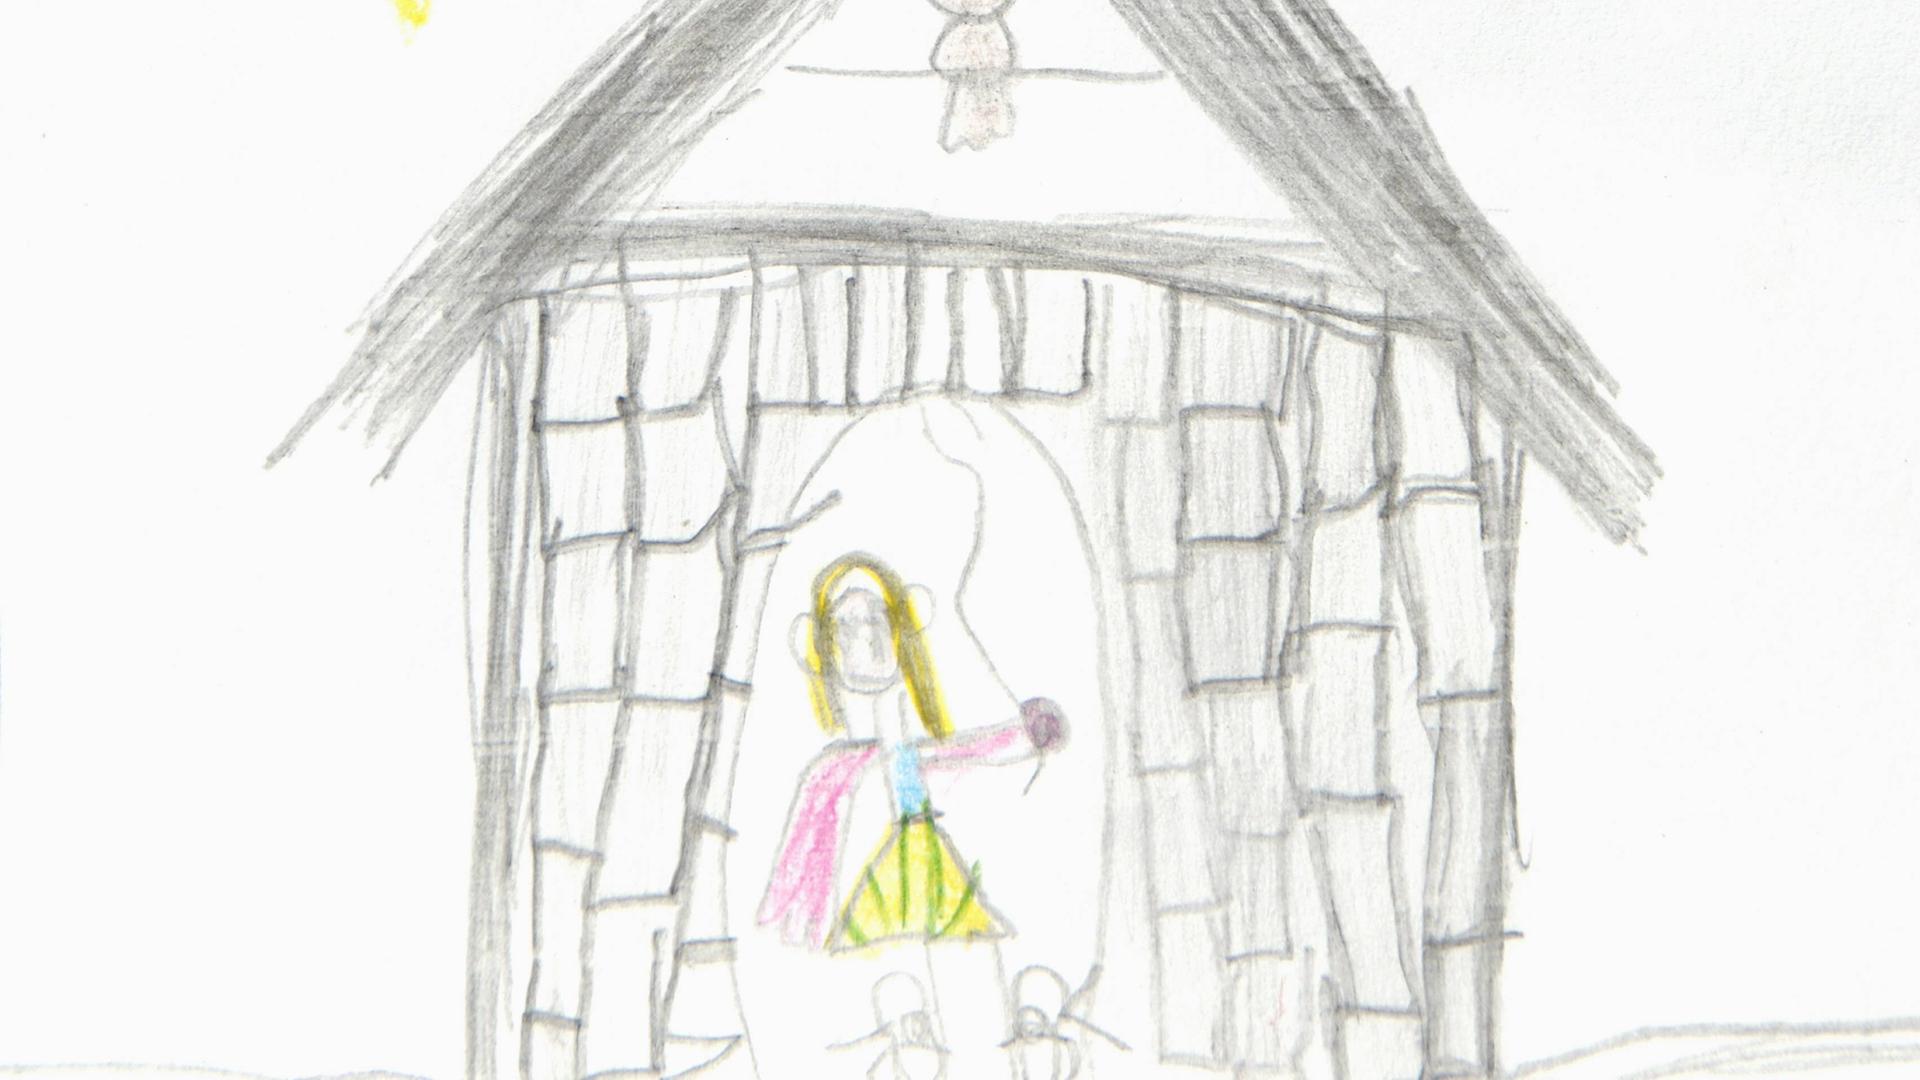 Kinderzeichnung der Märchenfigur "Frau Holle" in einem Turm.